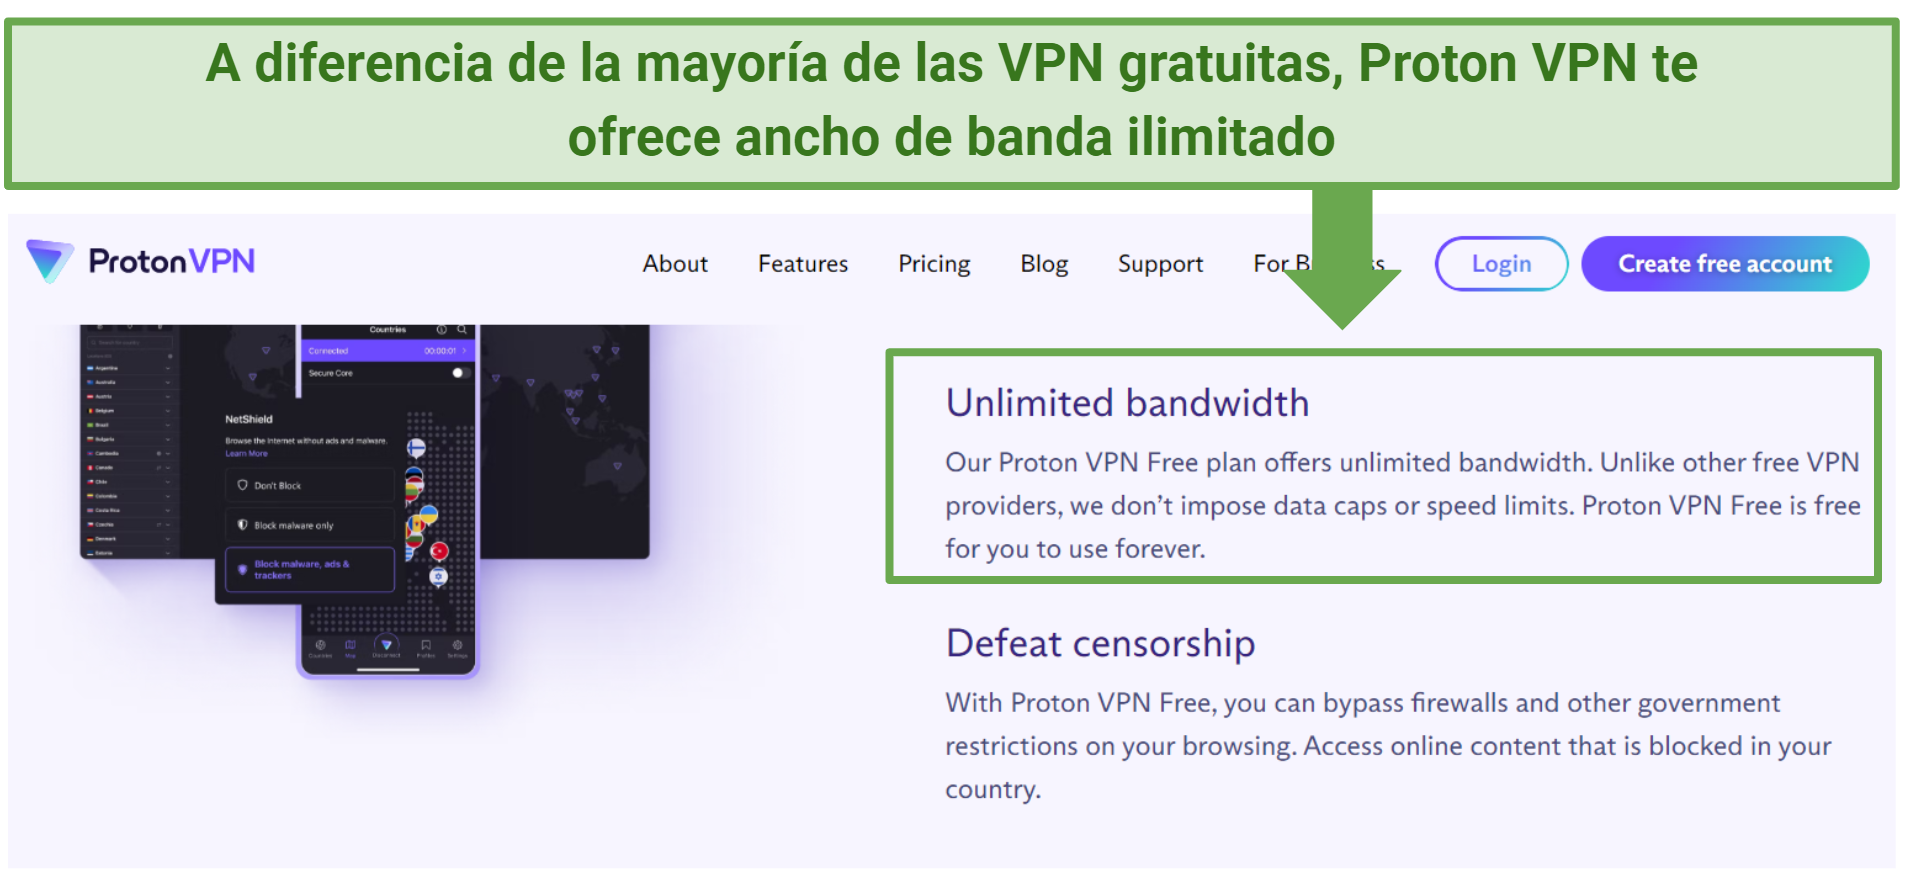  A screenshot showing Proton VPN's free plan doesn't cap bandwidth